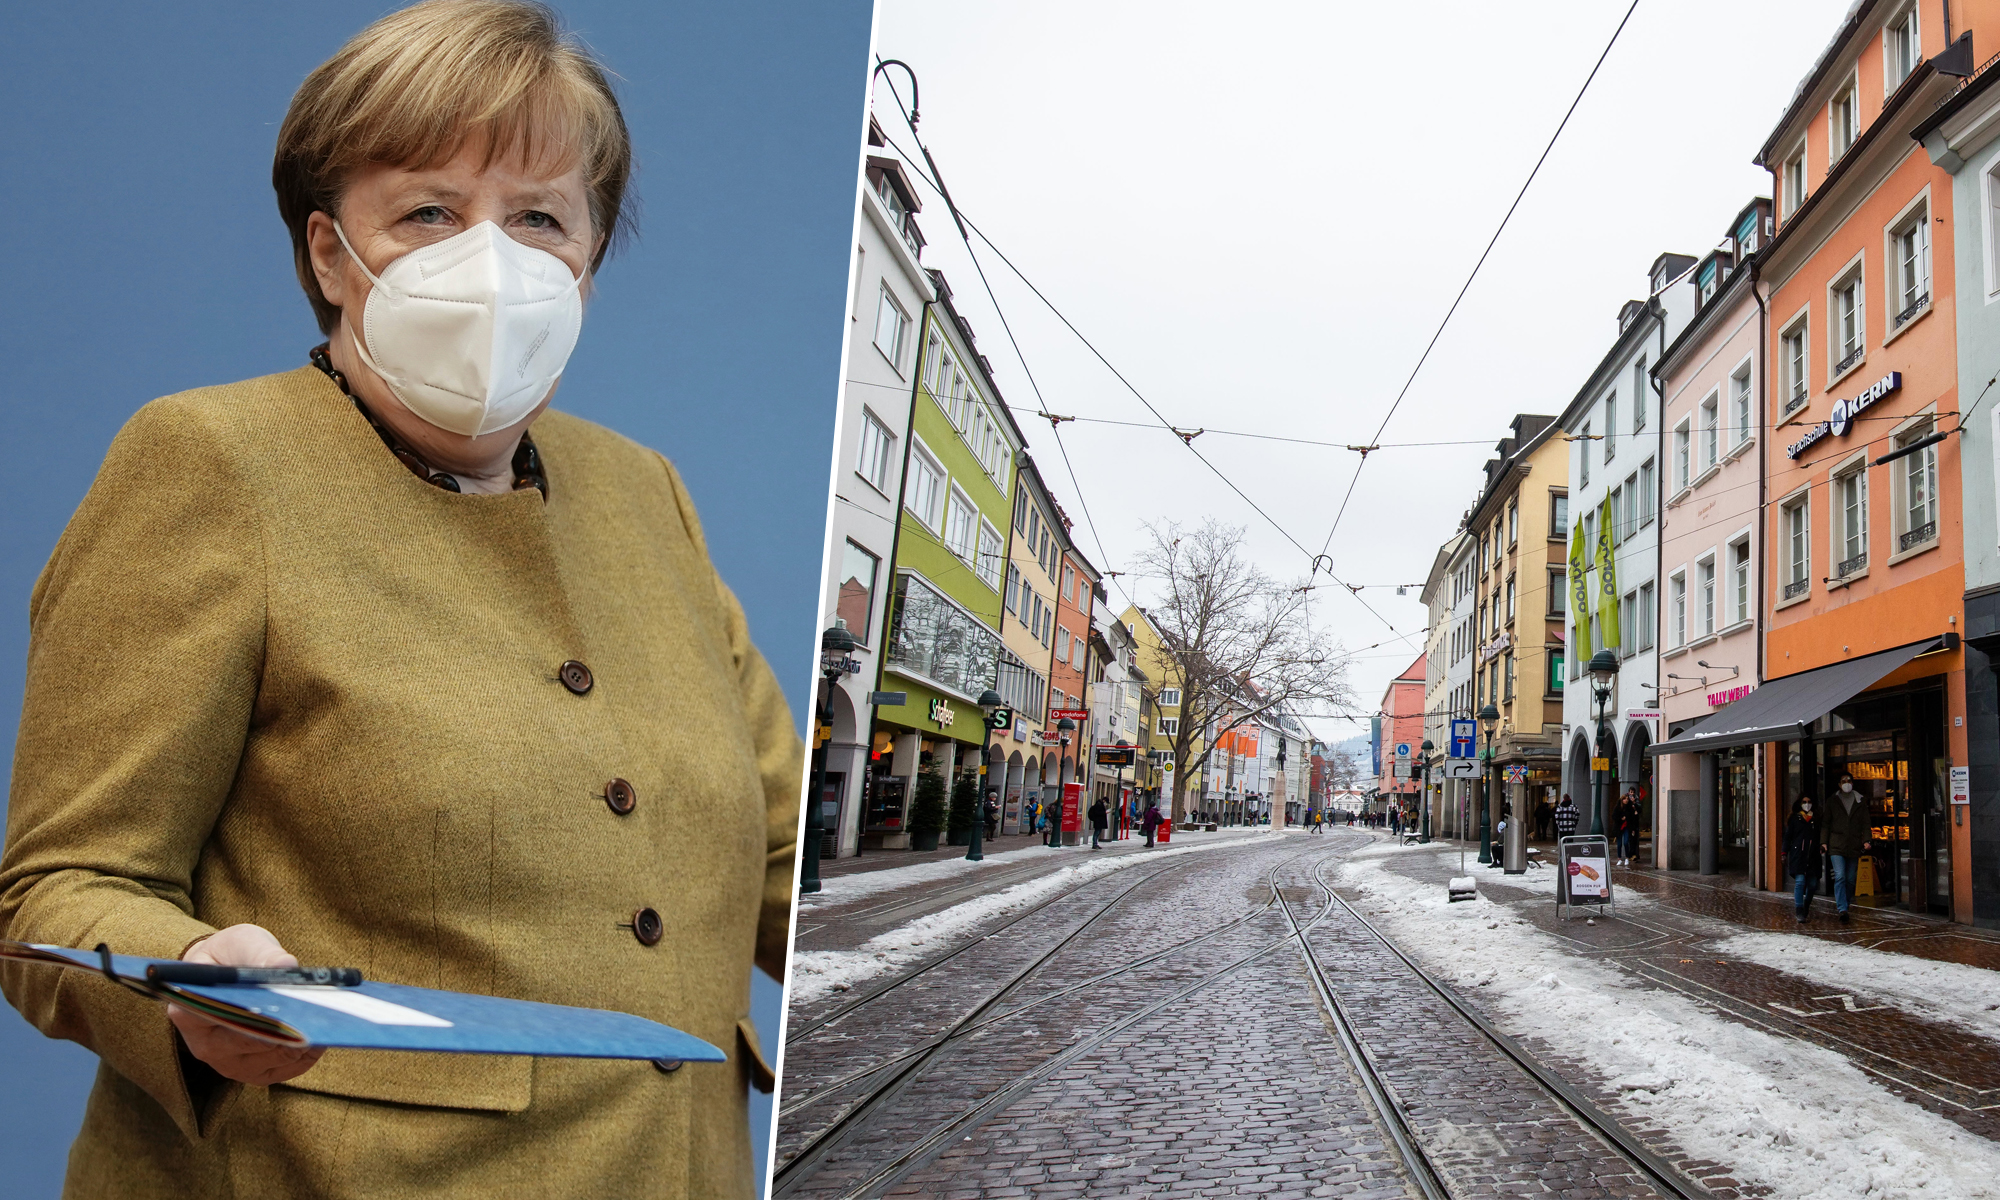 Kanzlerin Angela Merkel (CDU), Freiburger Innenstadt mit geschlossenen Läden